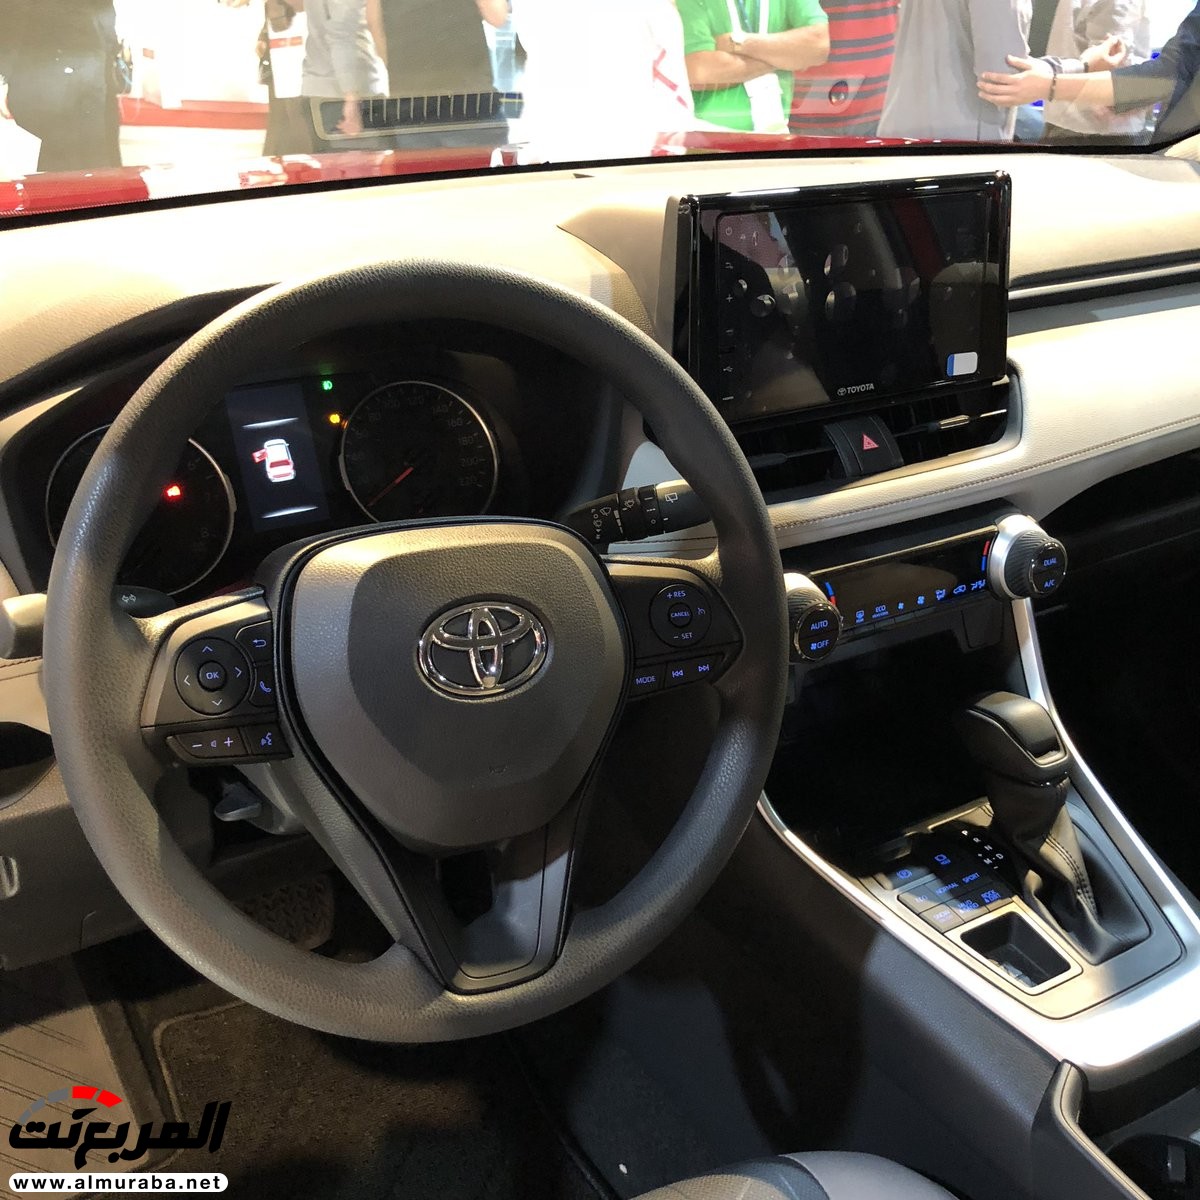 تويوتا راف فور 2019 الجديدة كلياً نسخة هايبرد وبنزين + اهم المواصفات Toyota Rav4 8